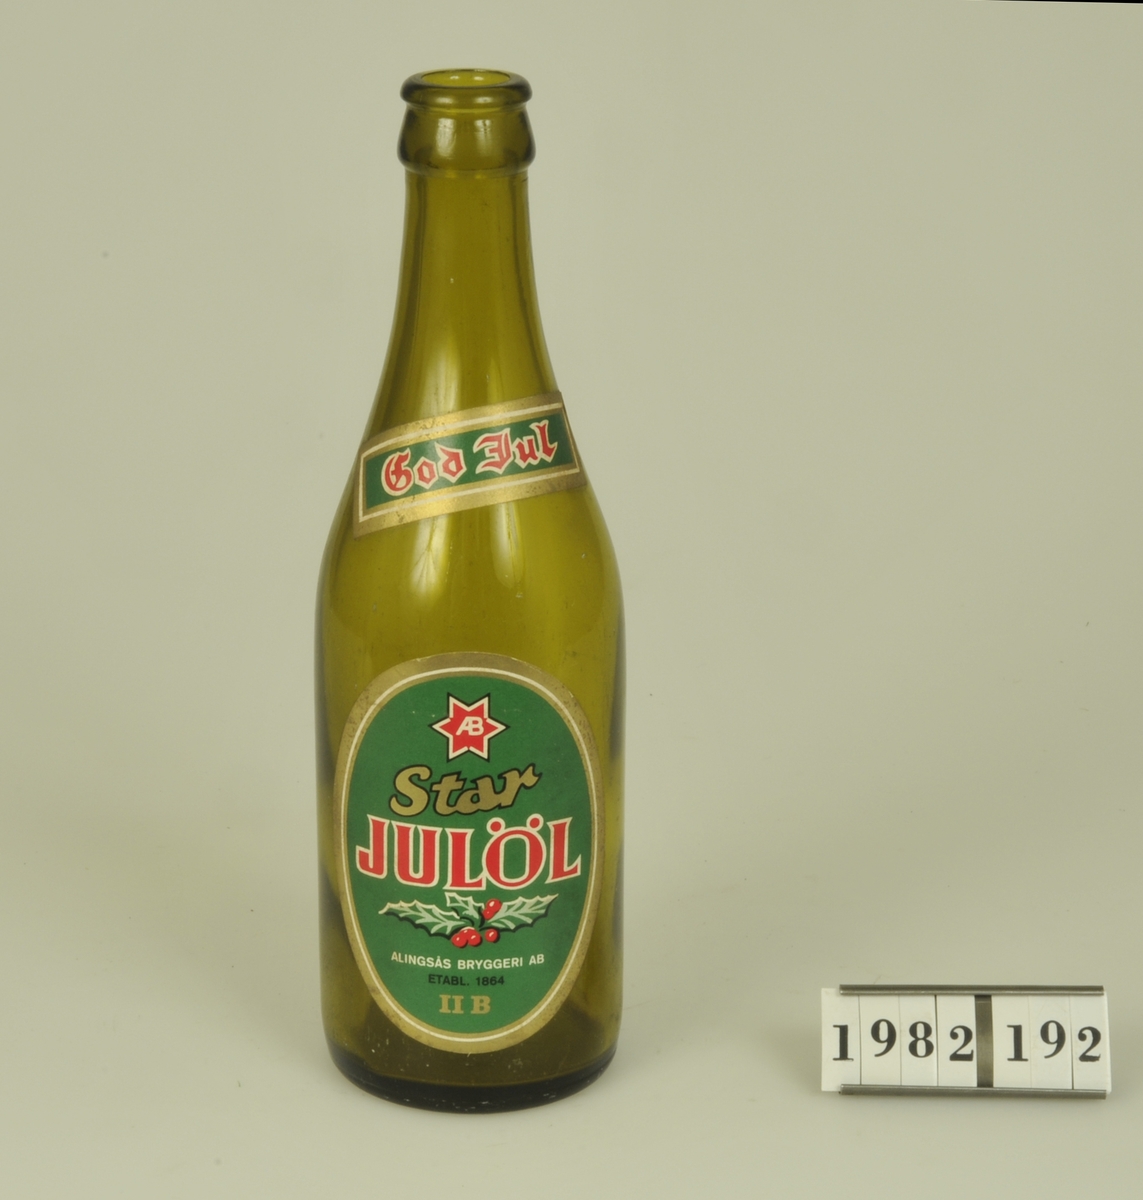 Av brunt glas.

Etikett med grön botten och röd och guldfärgad
text - "Star Julöl Alingsås Bryggeri AB. Etabl.
1864 II B".
